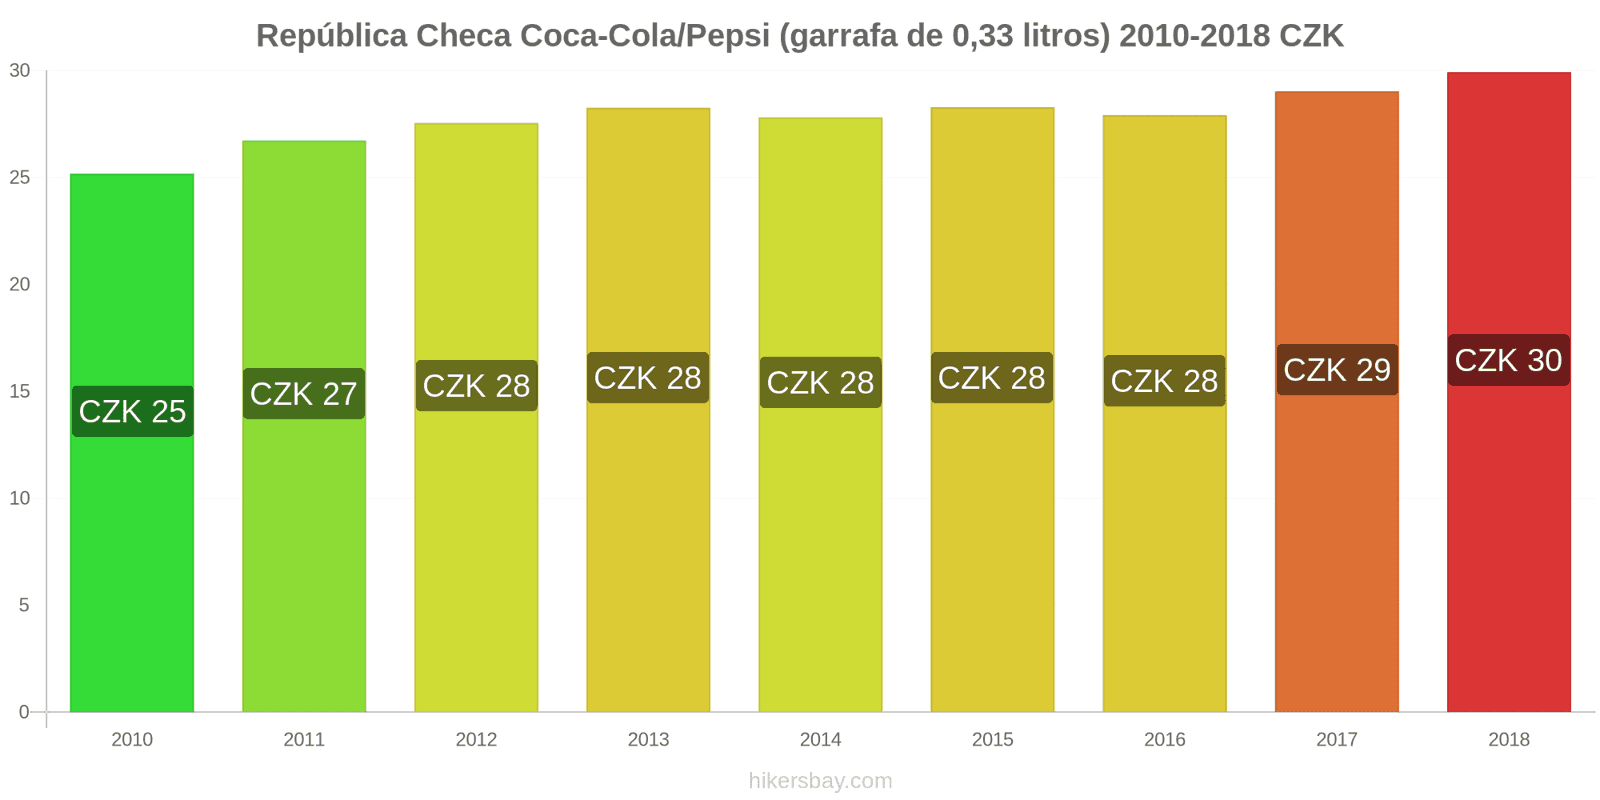 República Checa mudanças de preços Coca-Cola/Pepsi (garrafa de 0.33 litros) hikersbay.com